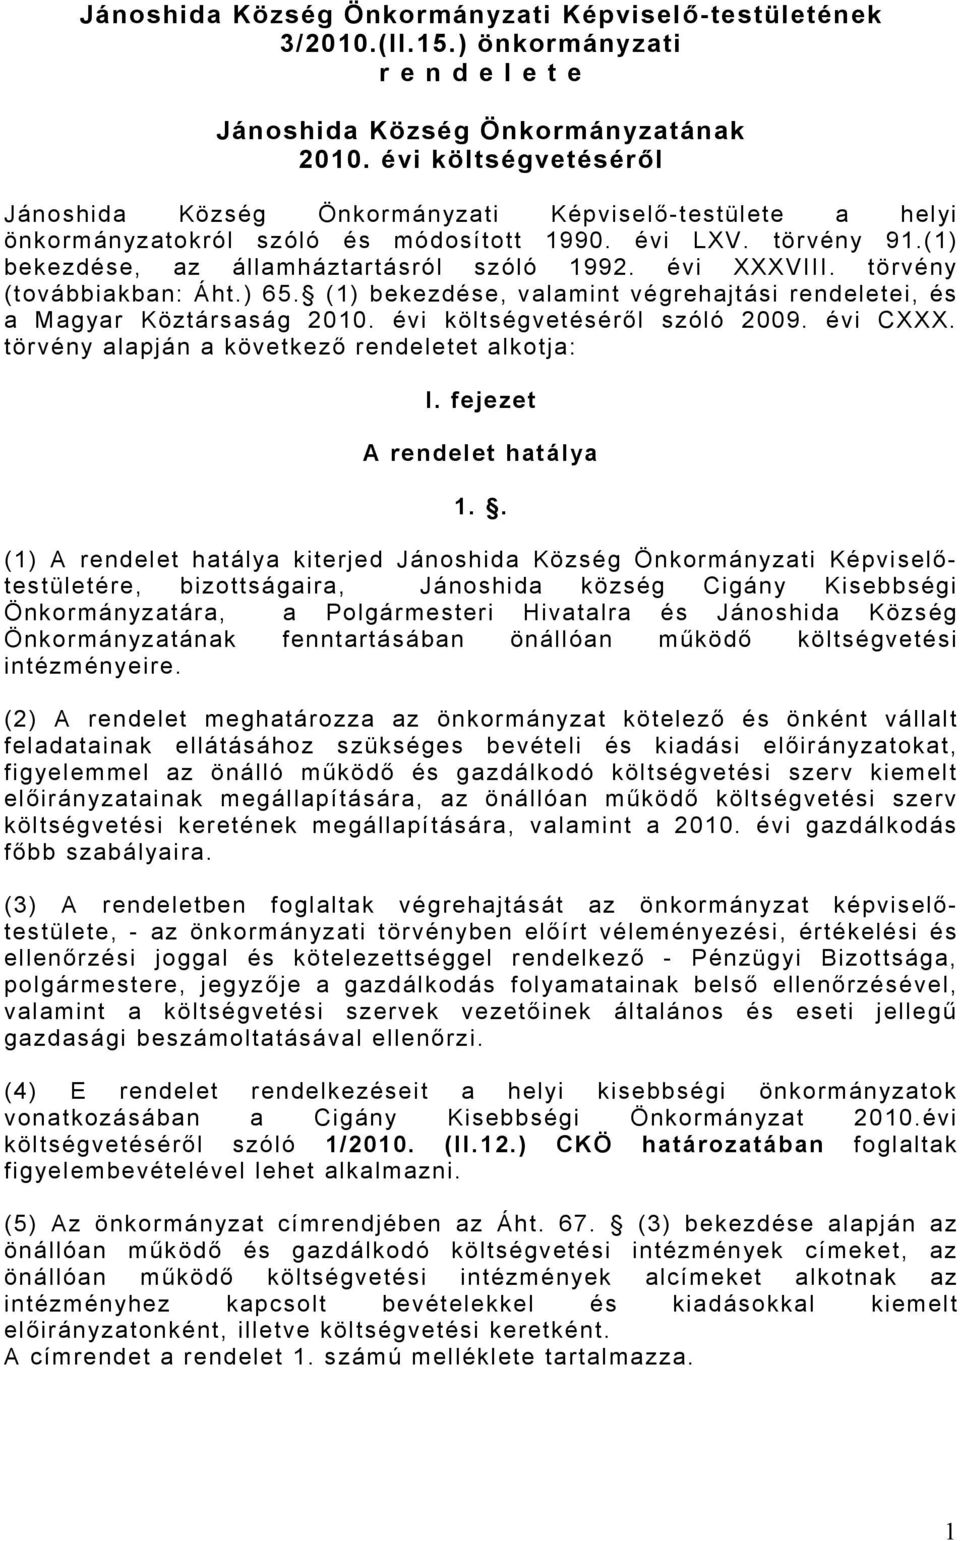 évi XXXVIII. törvény (továbbiakban: Áht.) 65. (1) bekezdése, valamint végrehajtási rendeletei, és a Magyar Köztársaság 2010. évi költségvetéséről szóló 2009. évi CXXX.